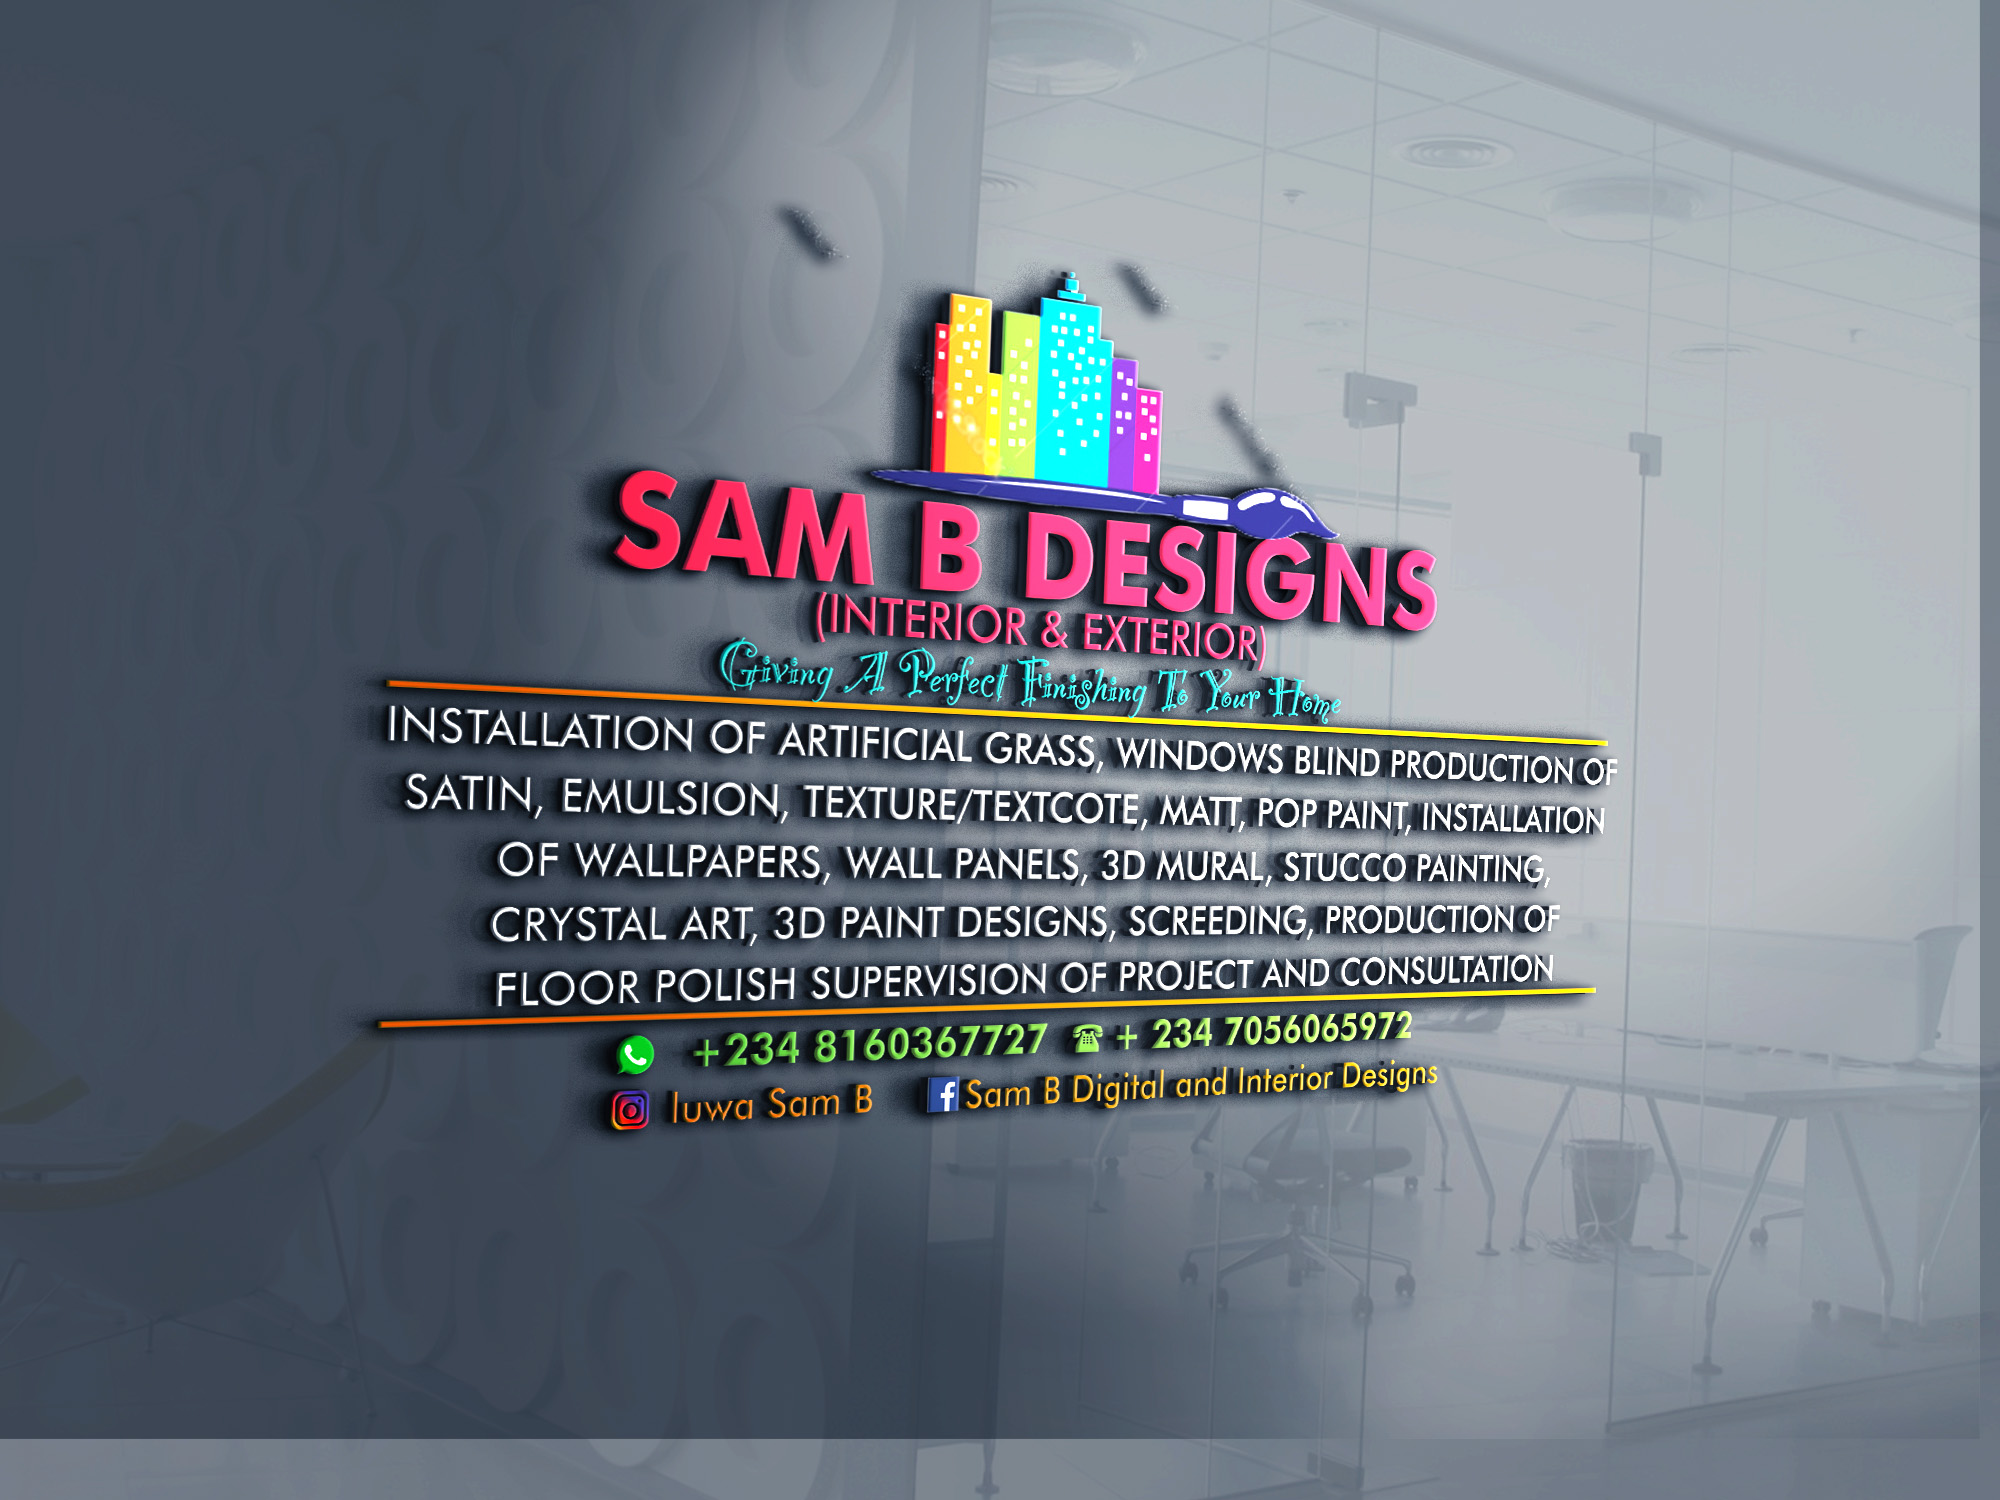 Sam B interior and exterior Design provider